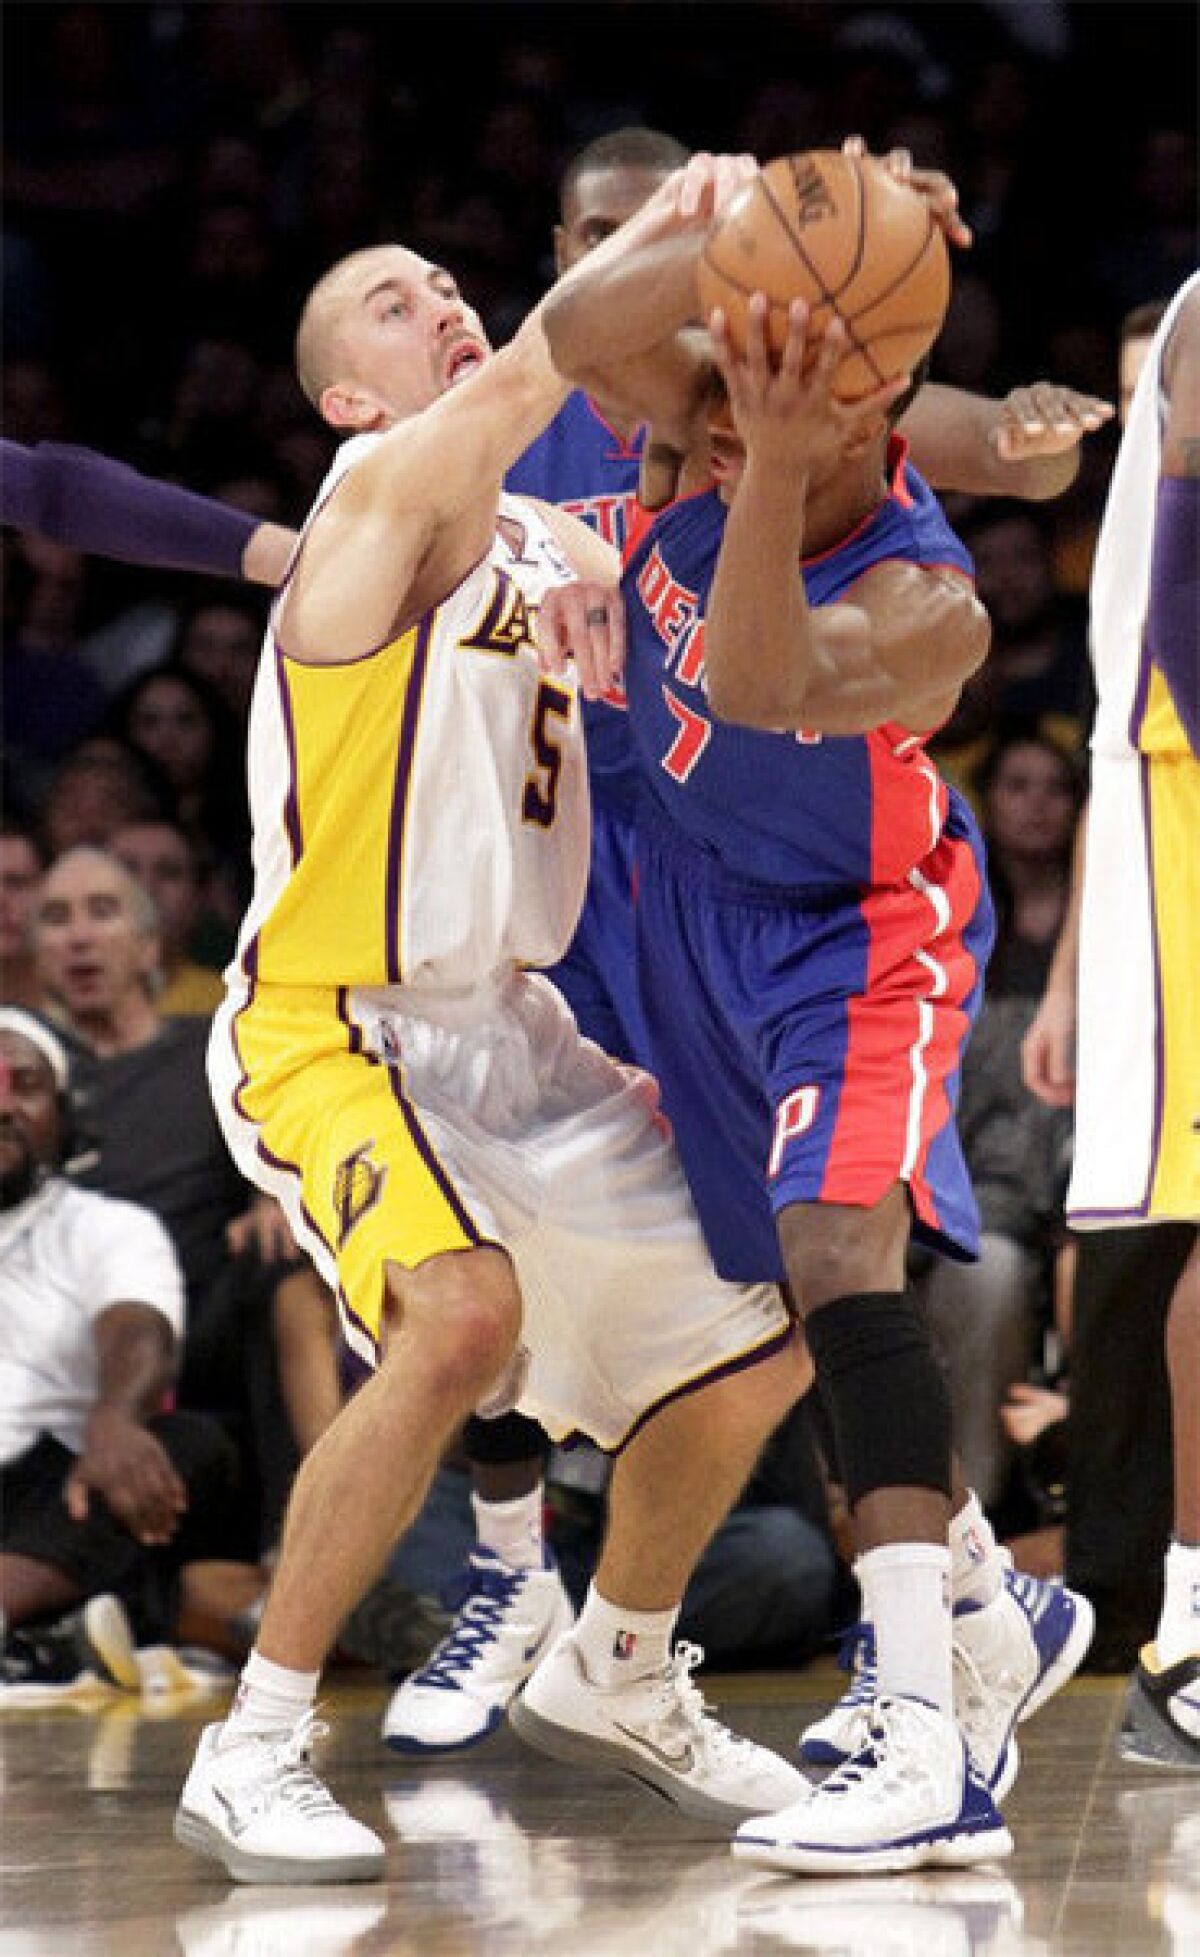 Steve Blake pressures Detroit Pistons guard Brandon Knight in their game at Staples Center.